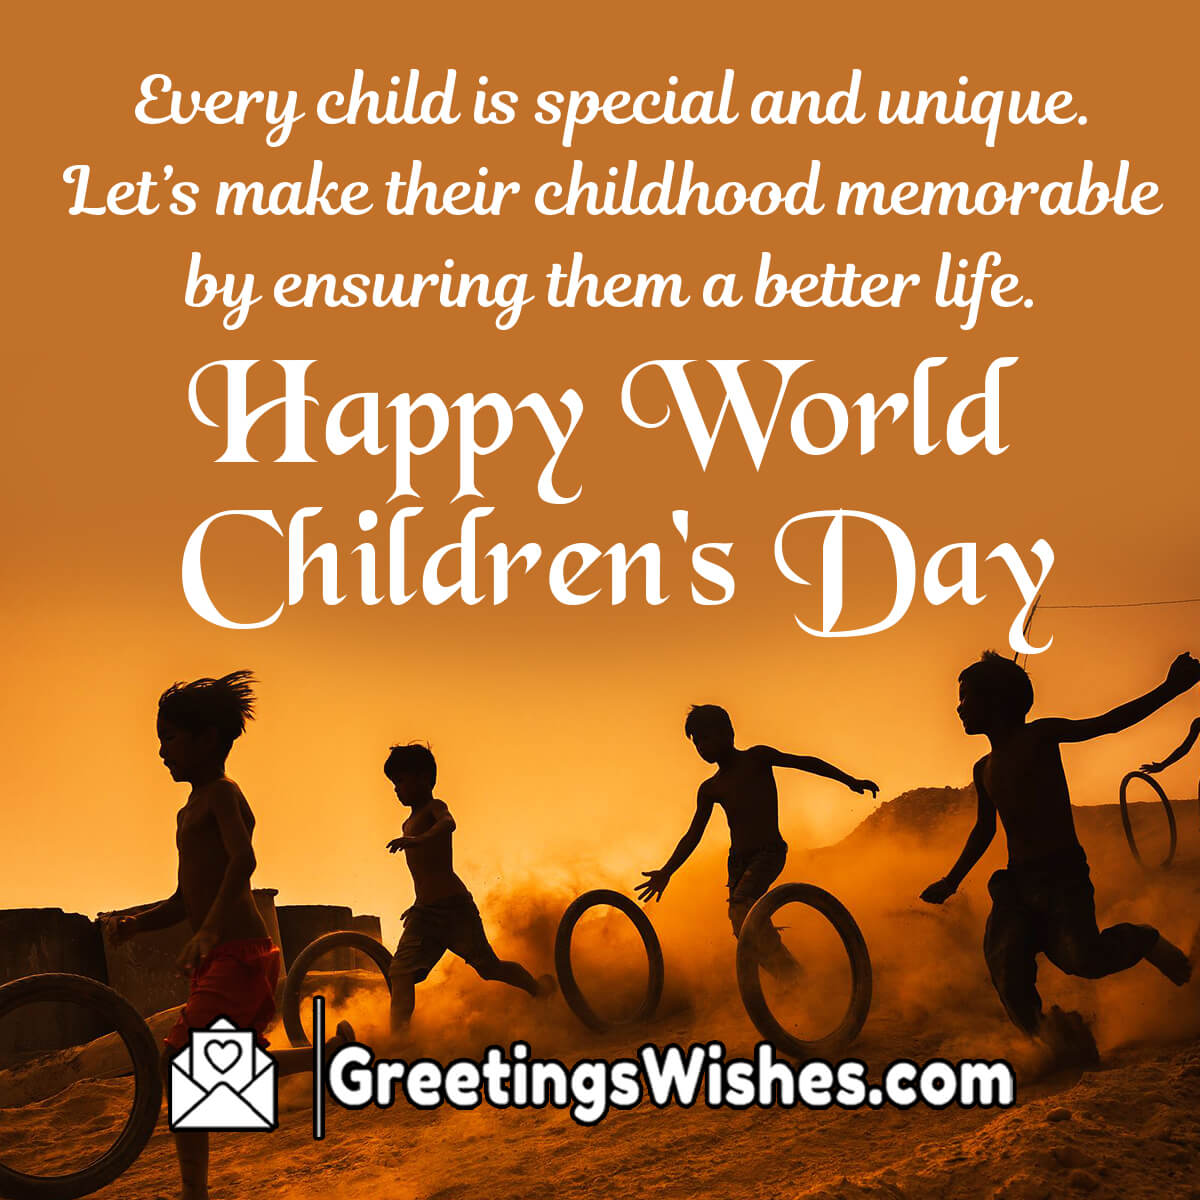 Happy World Children’s Day Wishes